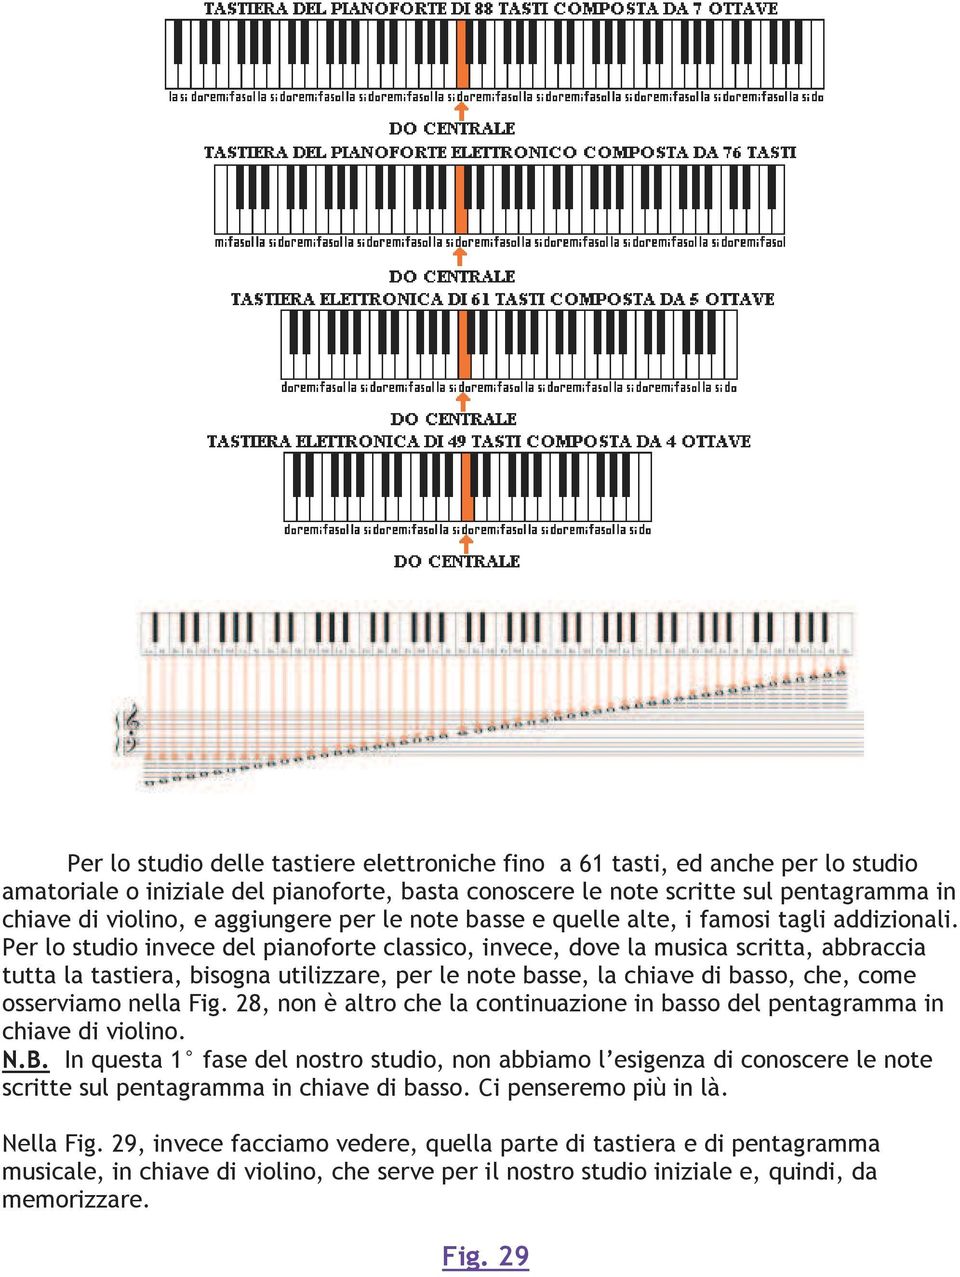 Per lo studio invece del pianoforte classico, invece, dove la musica scritta, abbraccia tutta la tastiera, bisogna utilizzare, per le note basse, la chiave di basso, che, come osserviamo nella Fig.